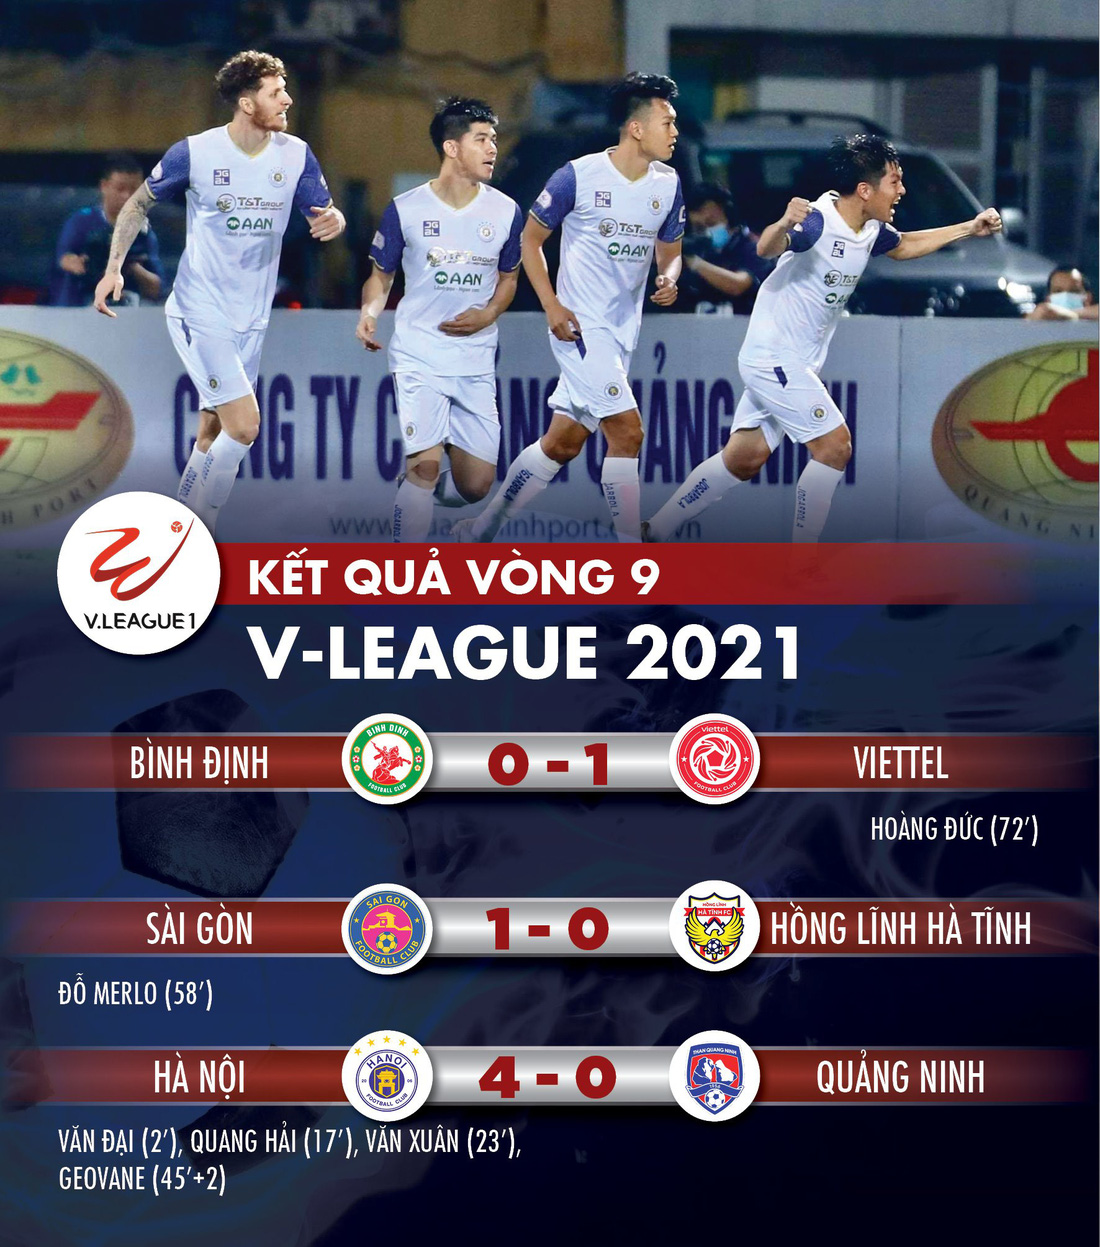 Kết quả, bảng xếp hạng V-League: CLB Sài Gòn đẩy Hà Tĩnh xuống đáy bảng - Ảnh 1.